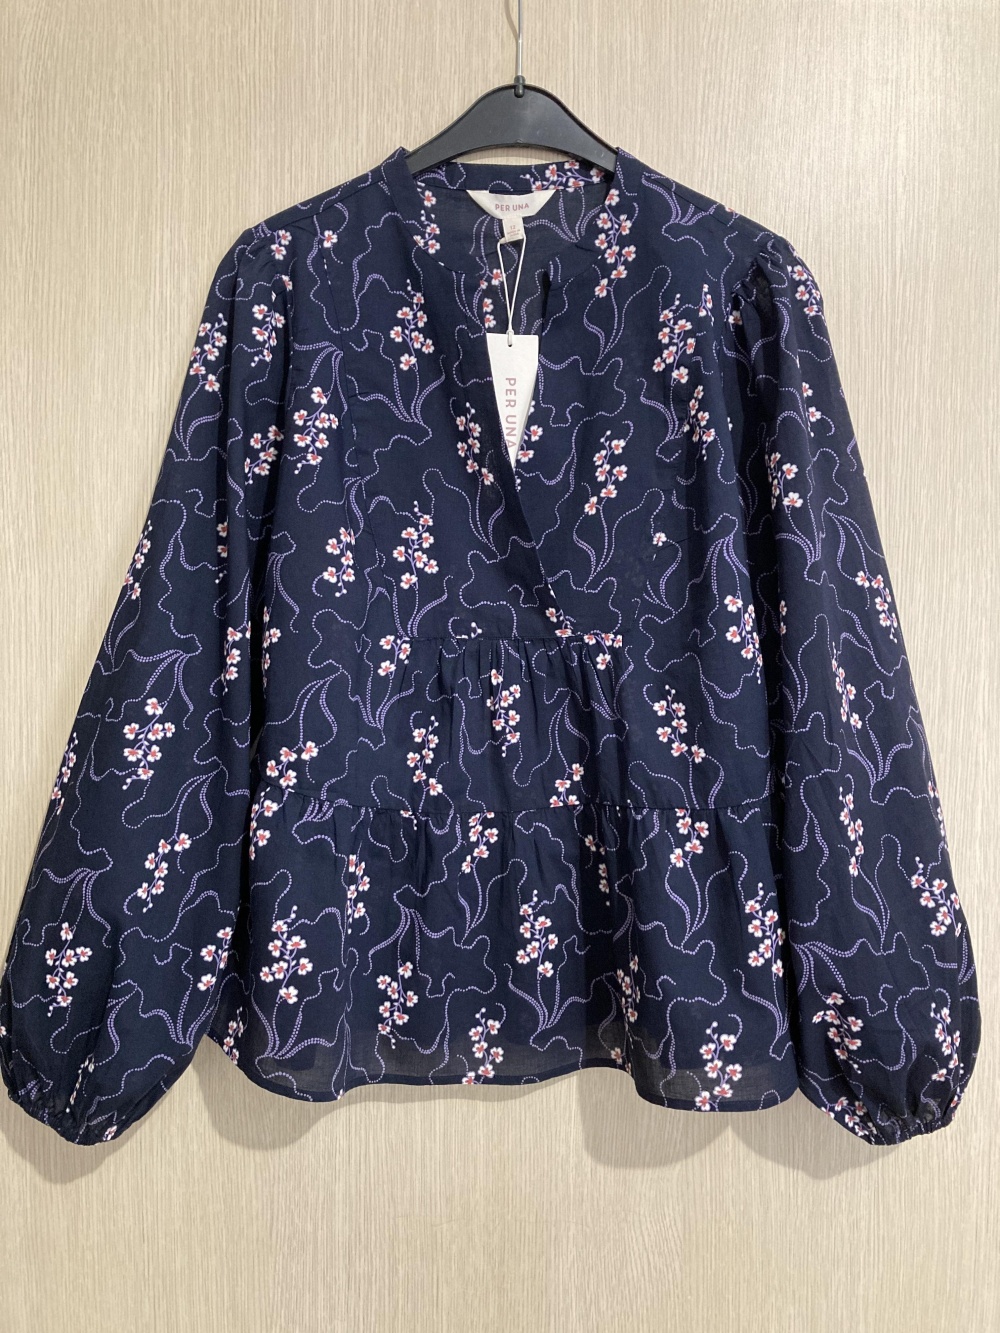 Блуза “ Marks & Spencer ”, 46-48 размер